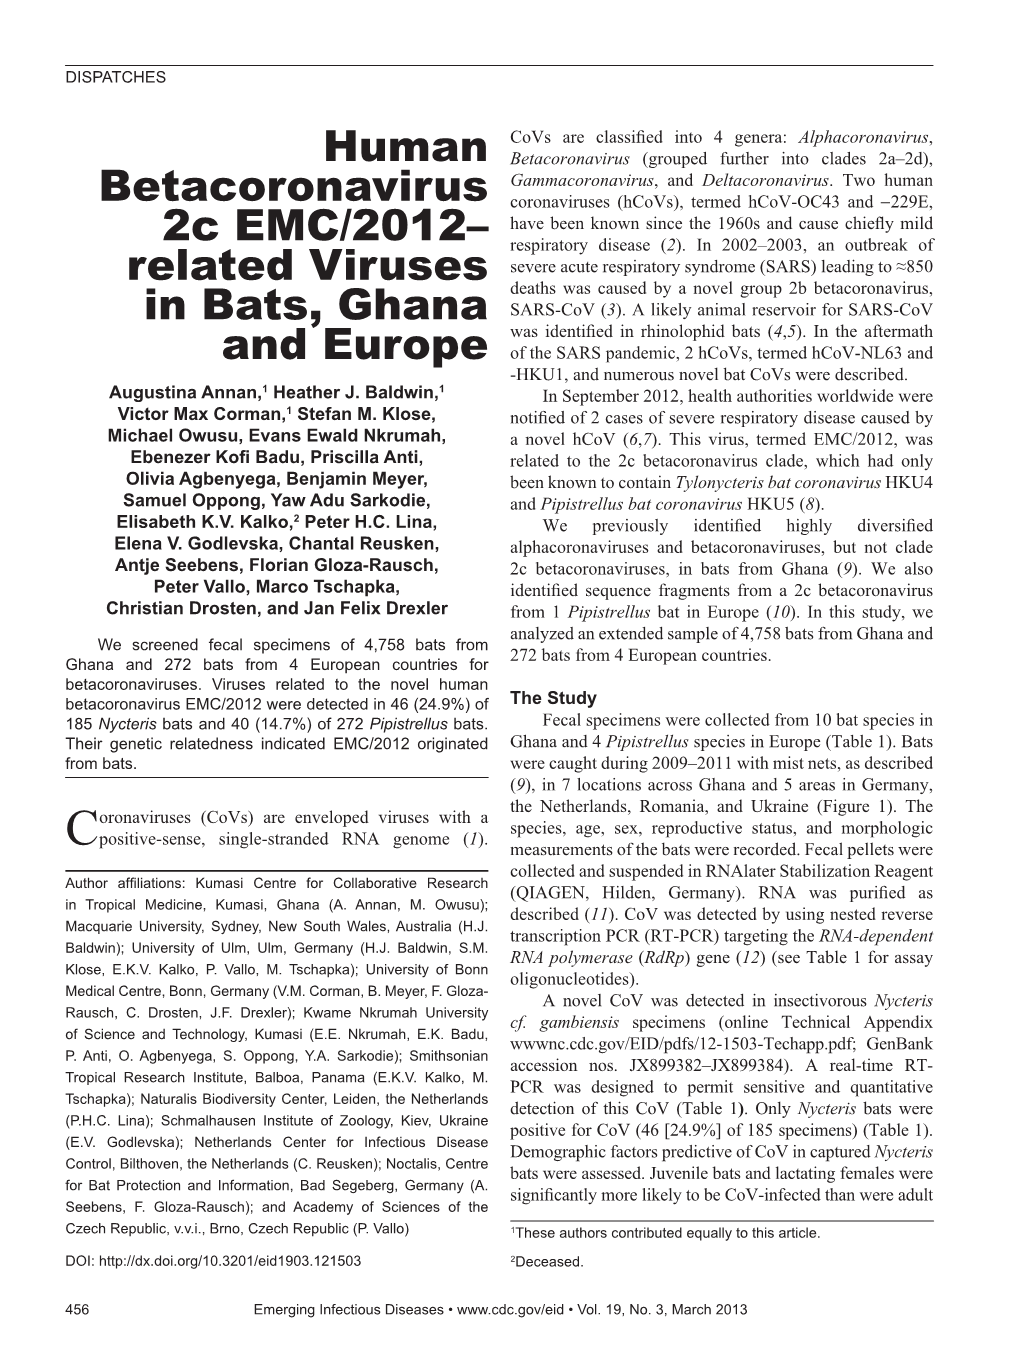 Human Betacoronavirus 2C EMC/2012– Related Viruses in Bats